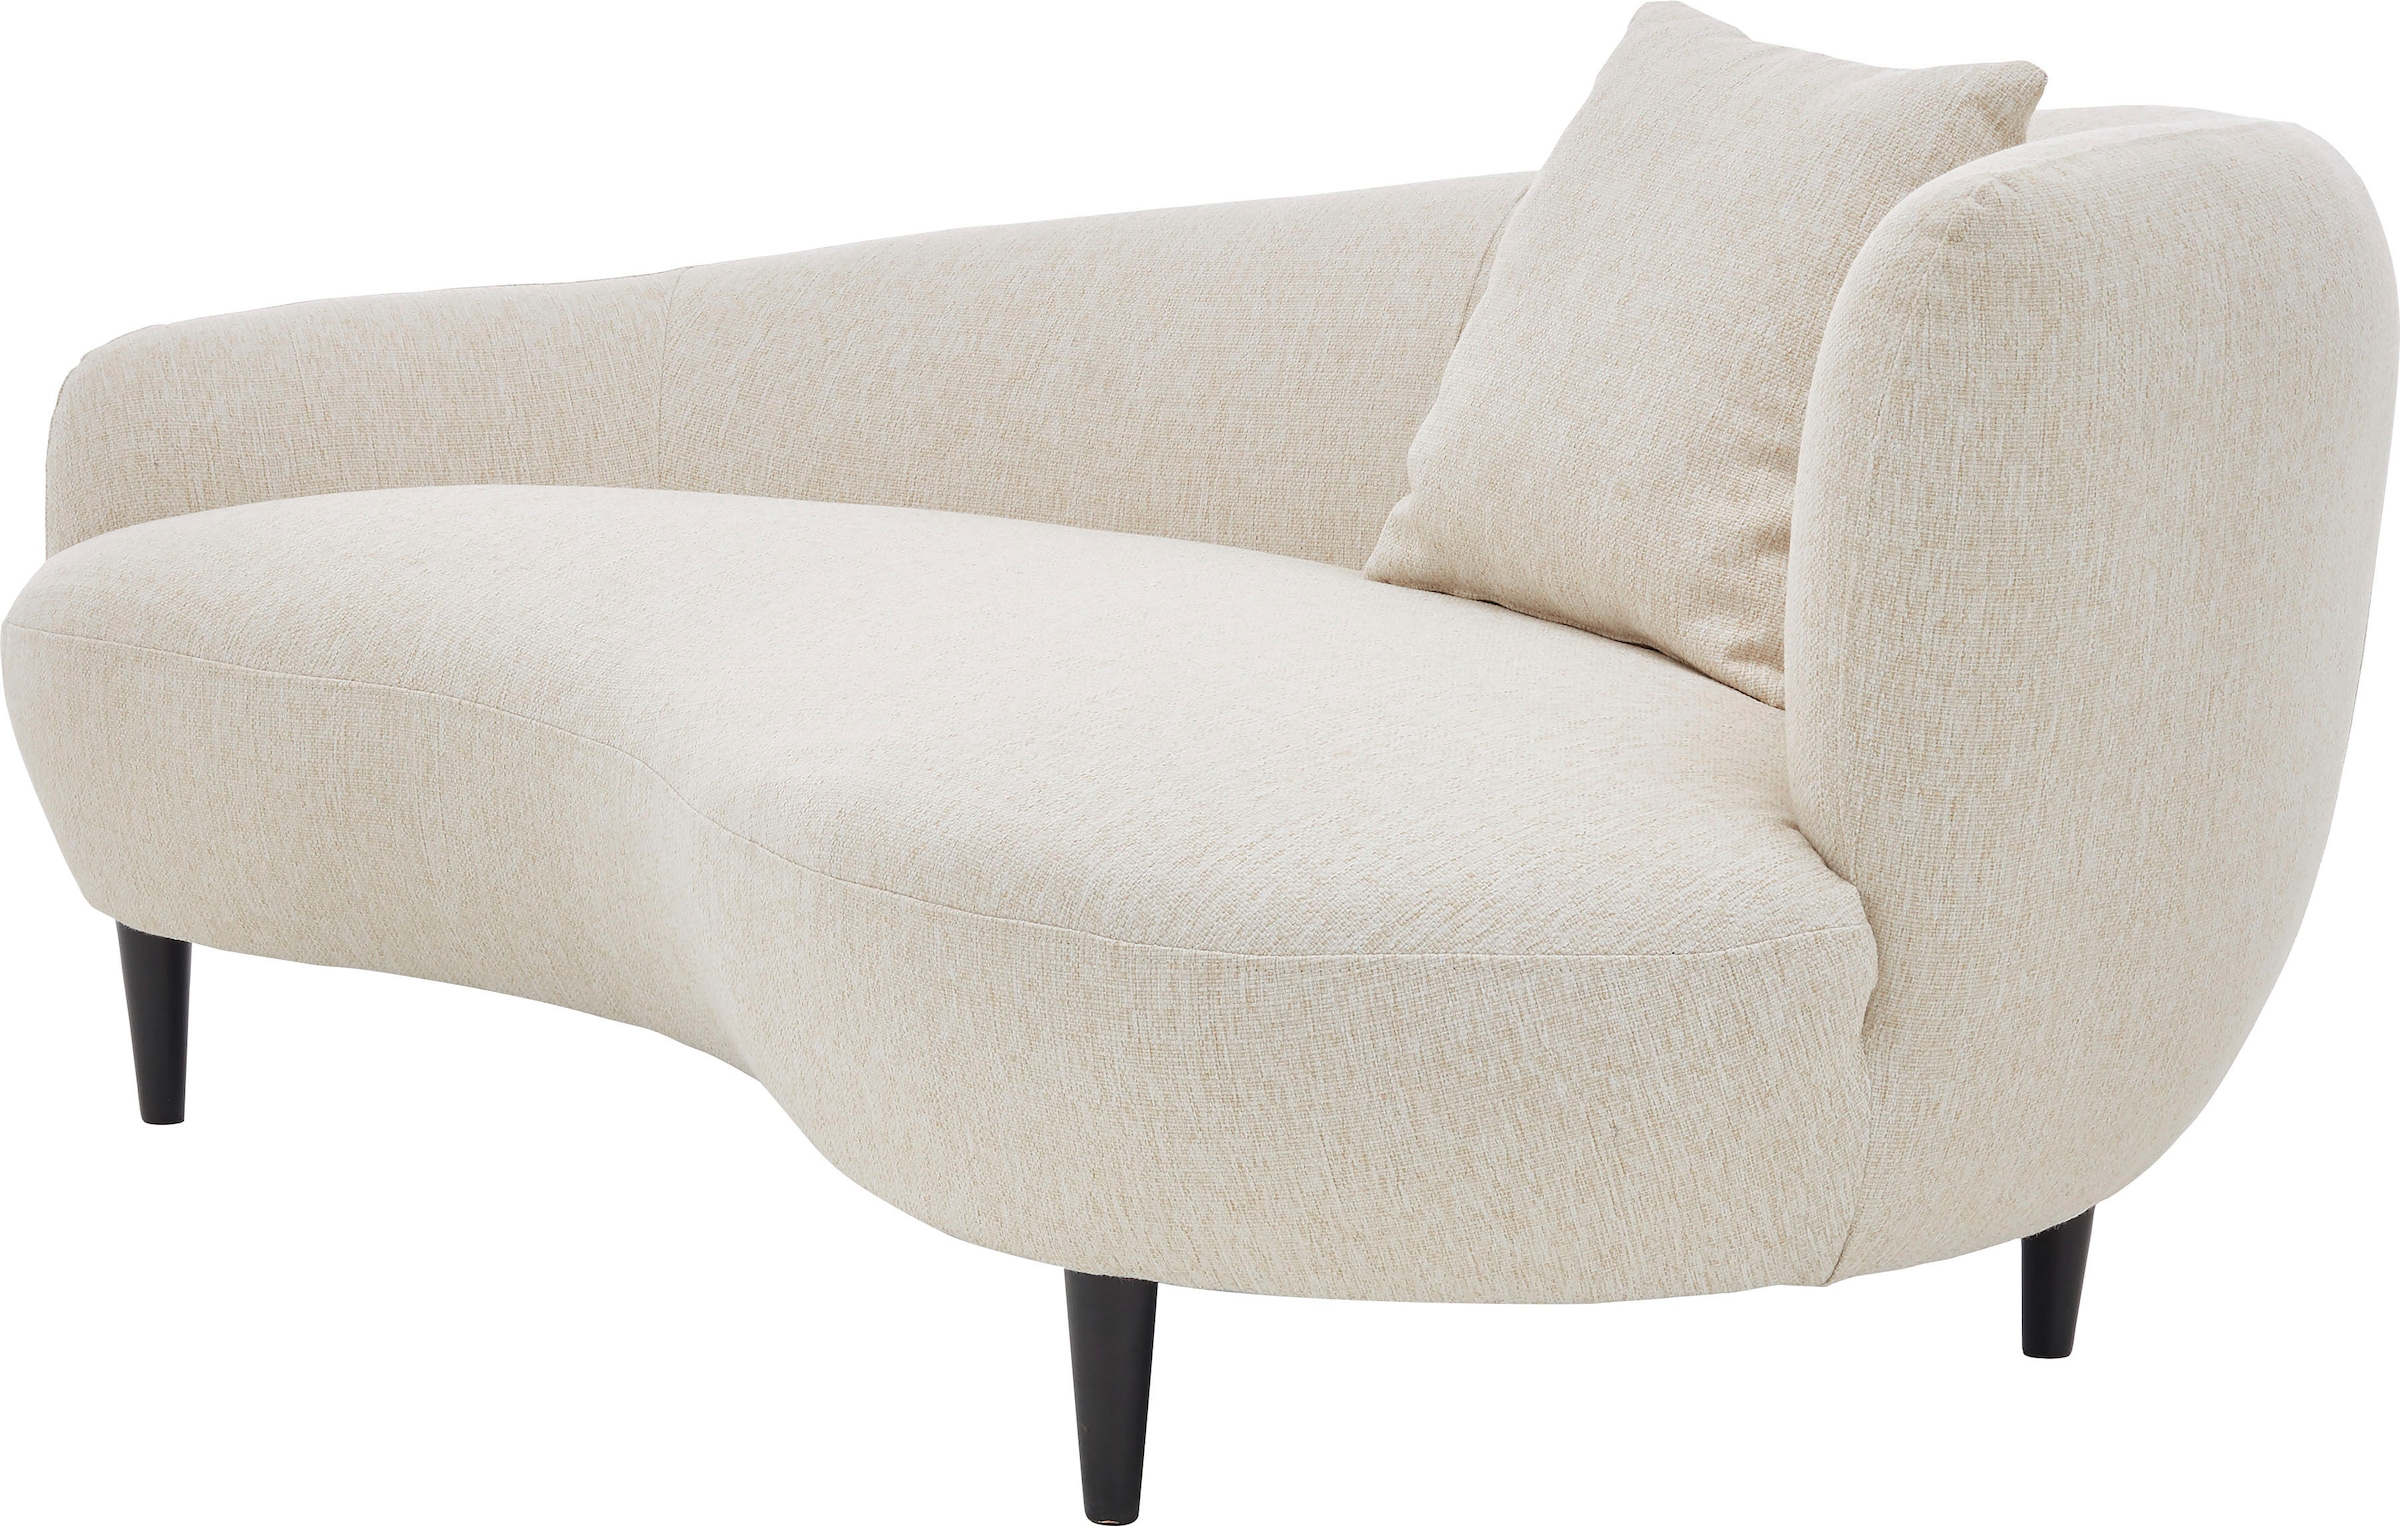 ATLANTIC home collection Chaiselongue, Nierenform-Sofa im Raten kaufen auf Originalbezug Zierkissen mit